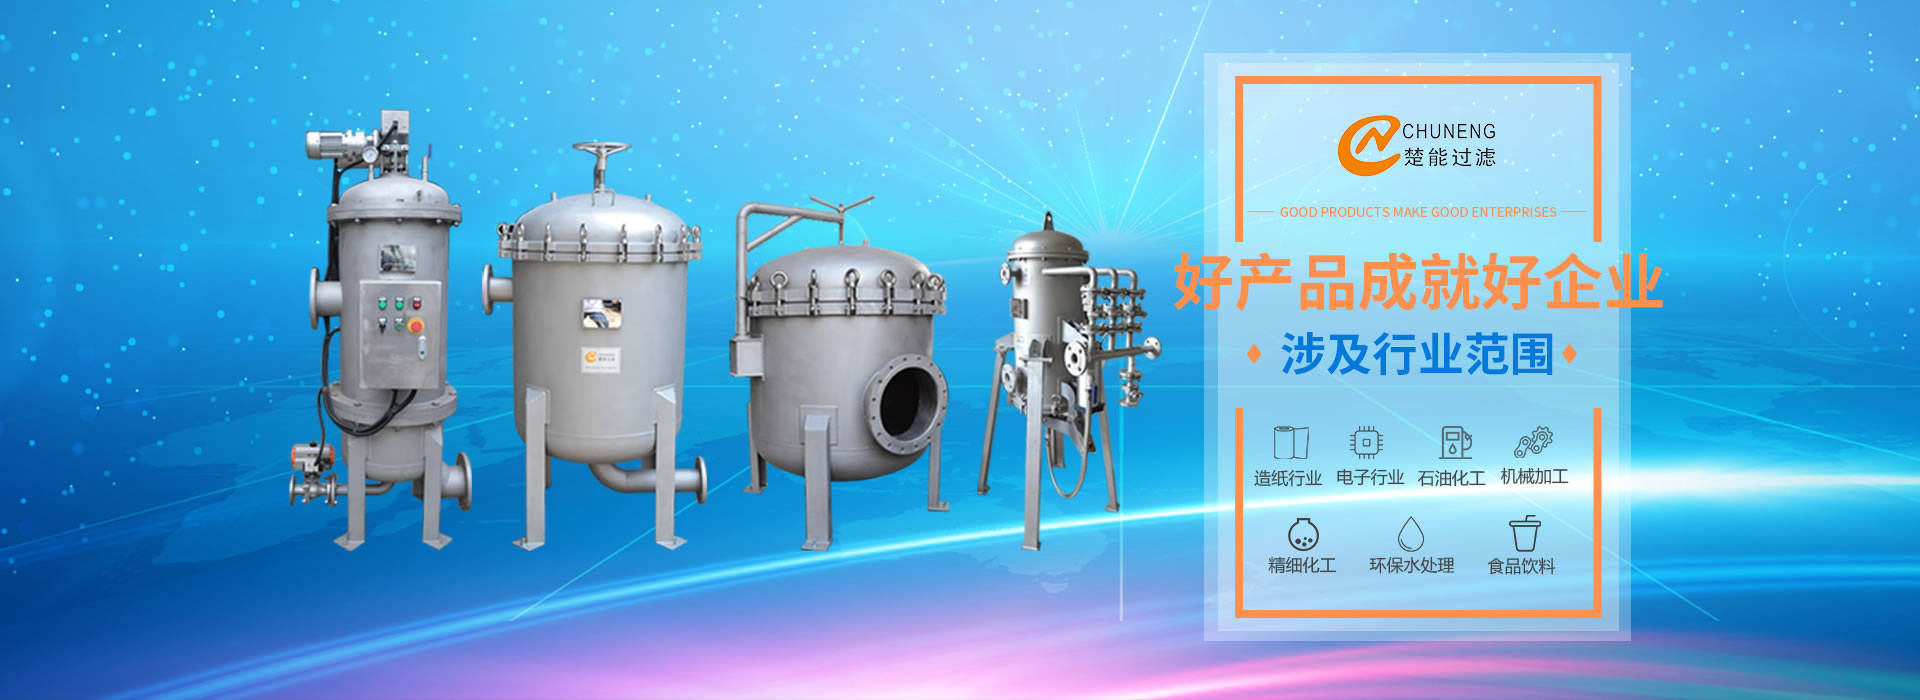 上海楚能工業過濾係統有限公司是集研發、製造、銷售/服務於一體的過濾設備與過濾元件專業生產廠家